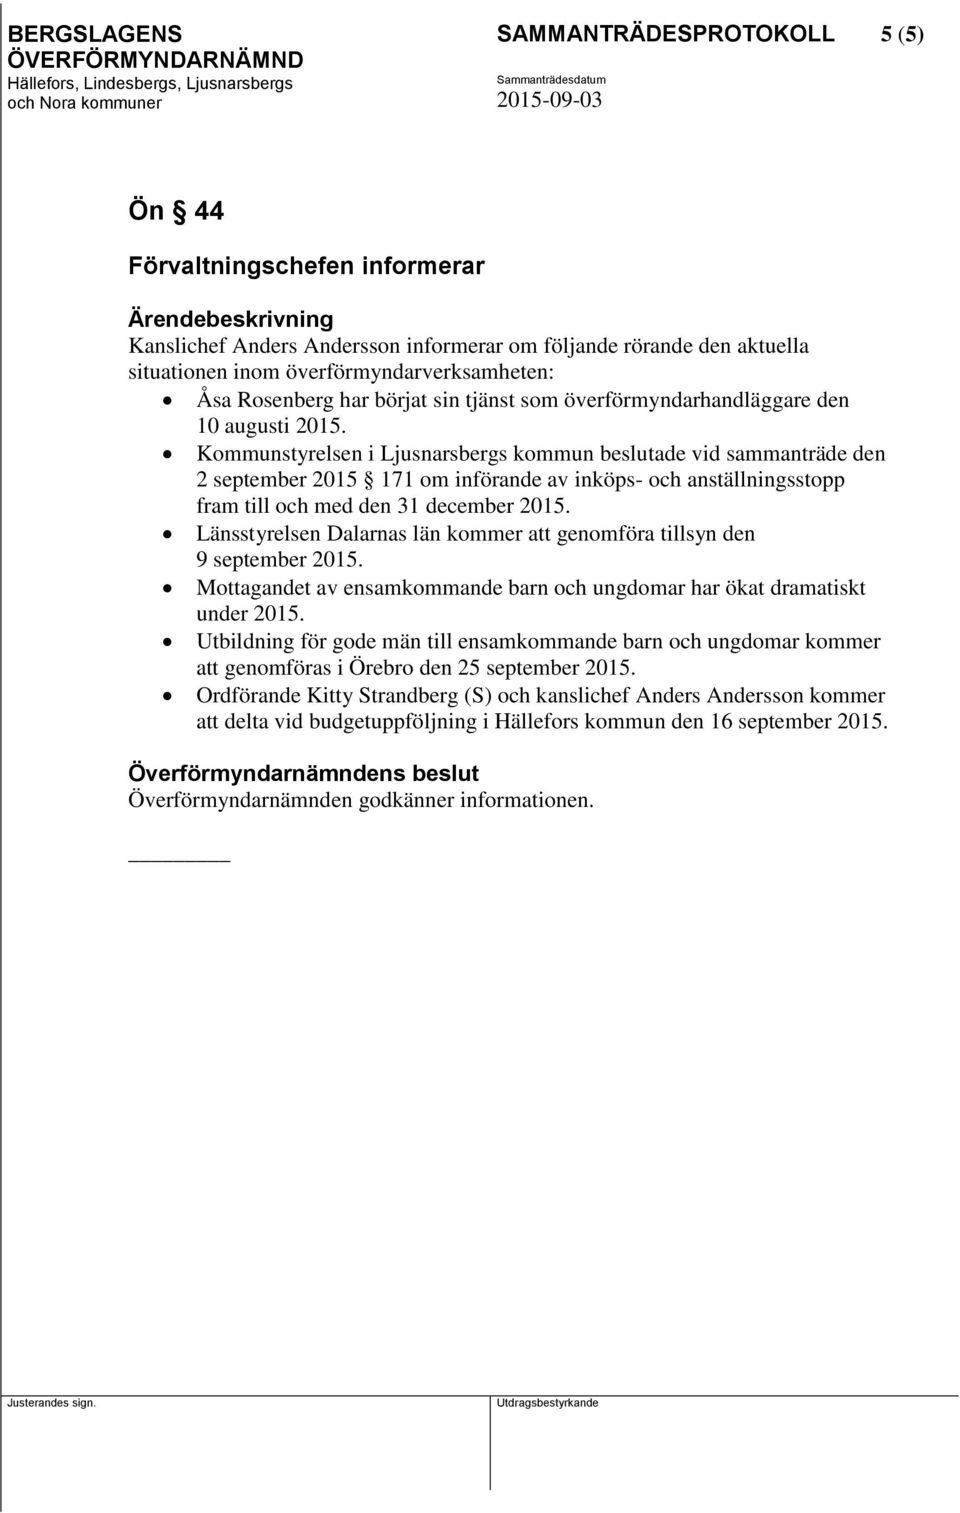 Kommunstyrelsen i Ljusnarsbergs kommun beslutade vid sammanträde den 2 september 2015 171 om införande av inköps- och anställningsstopp fram till och med den 31 december 2015.